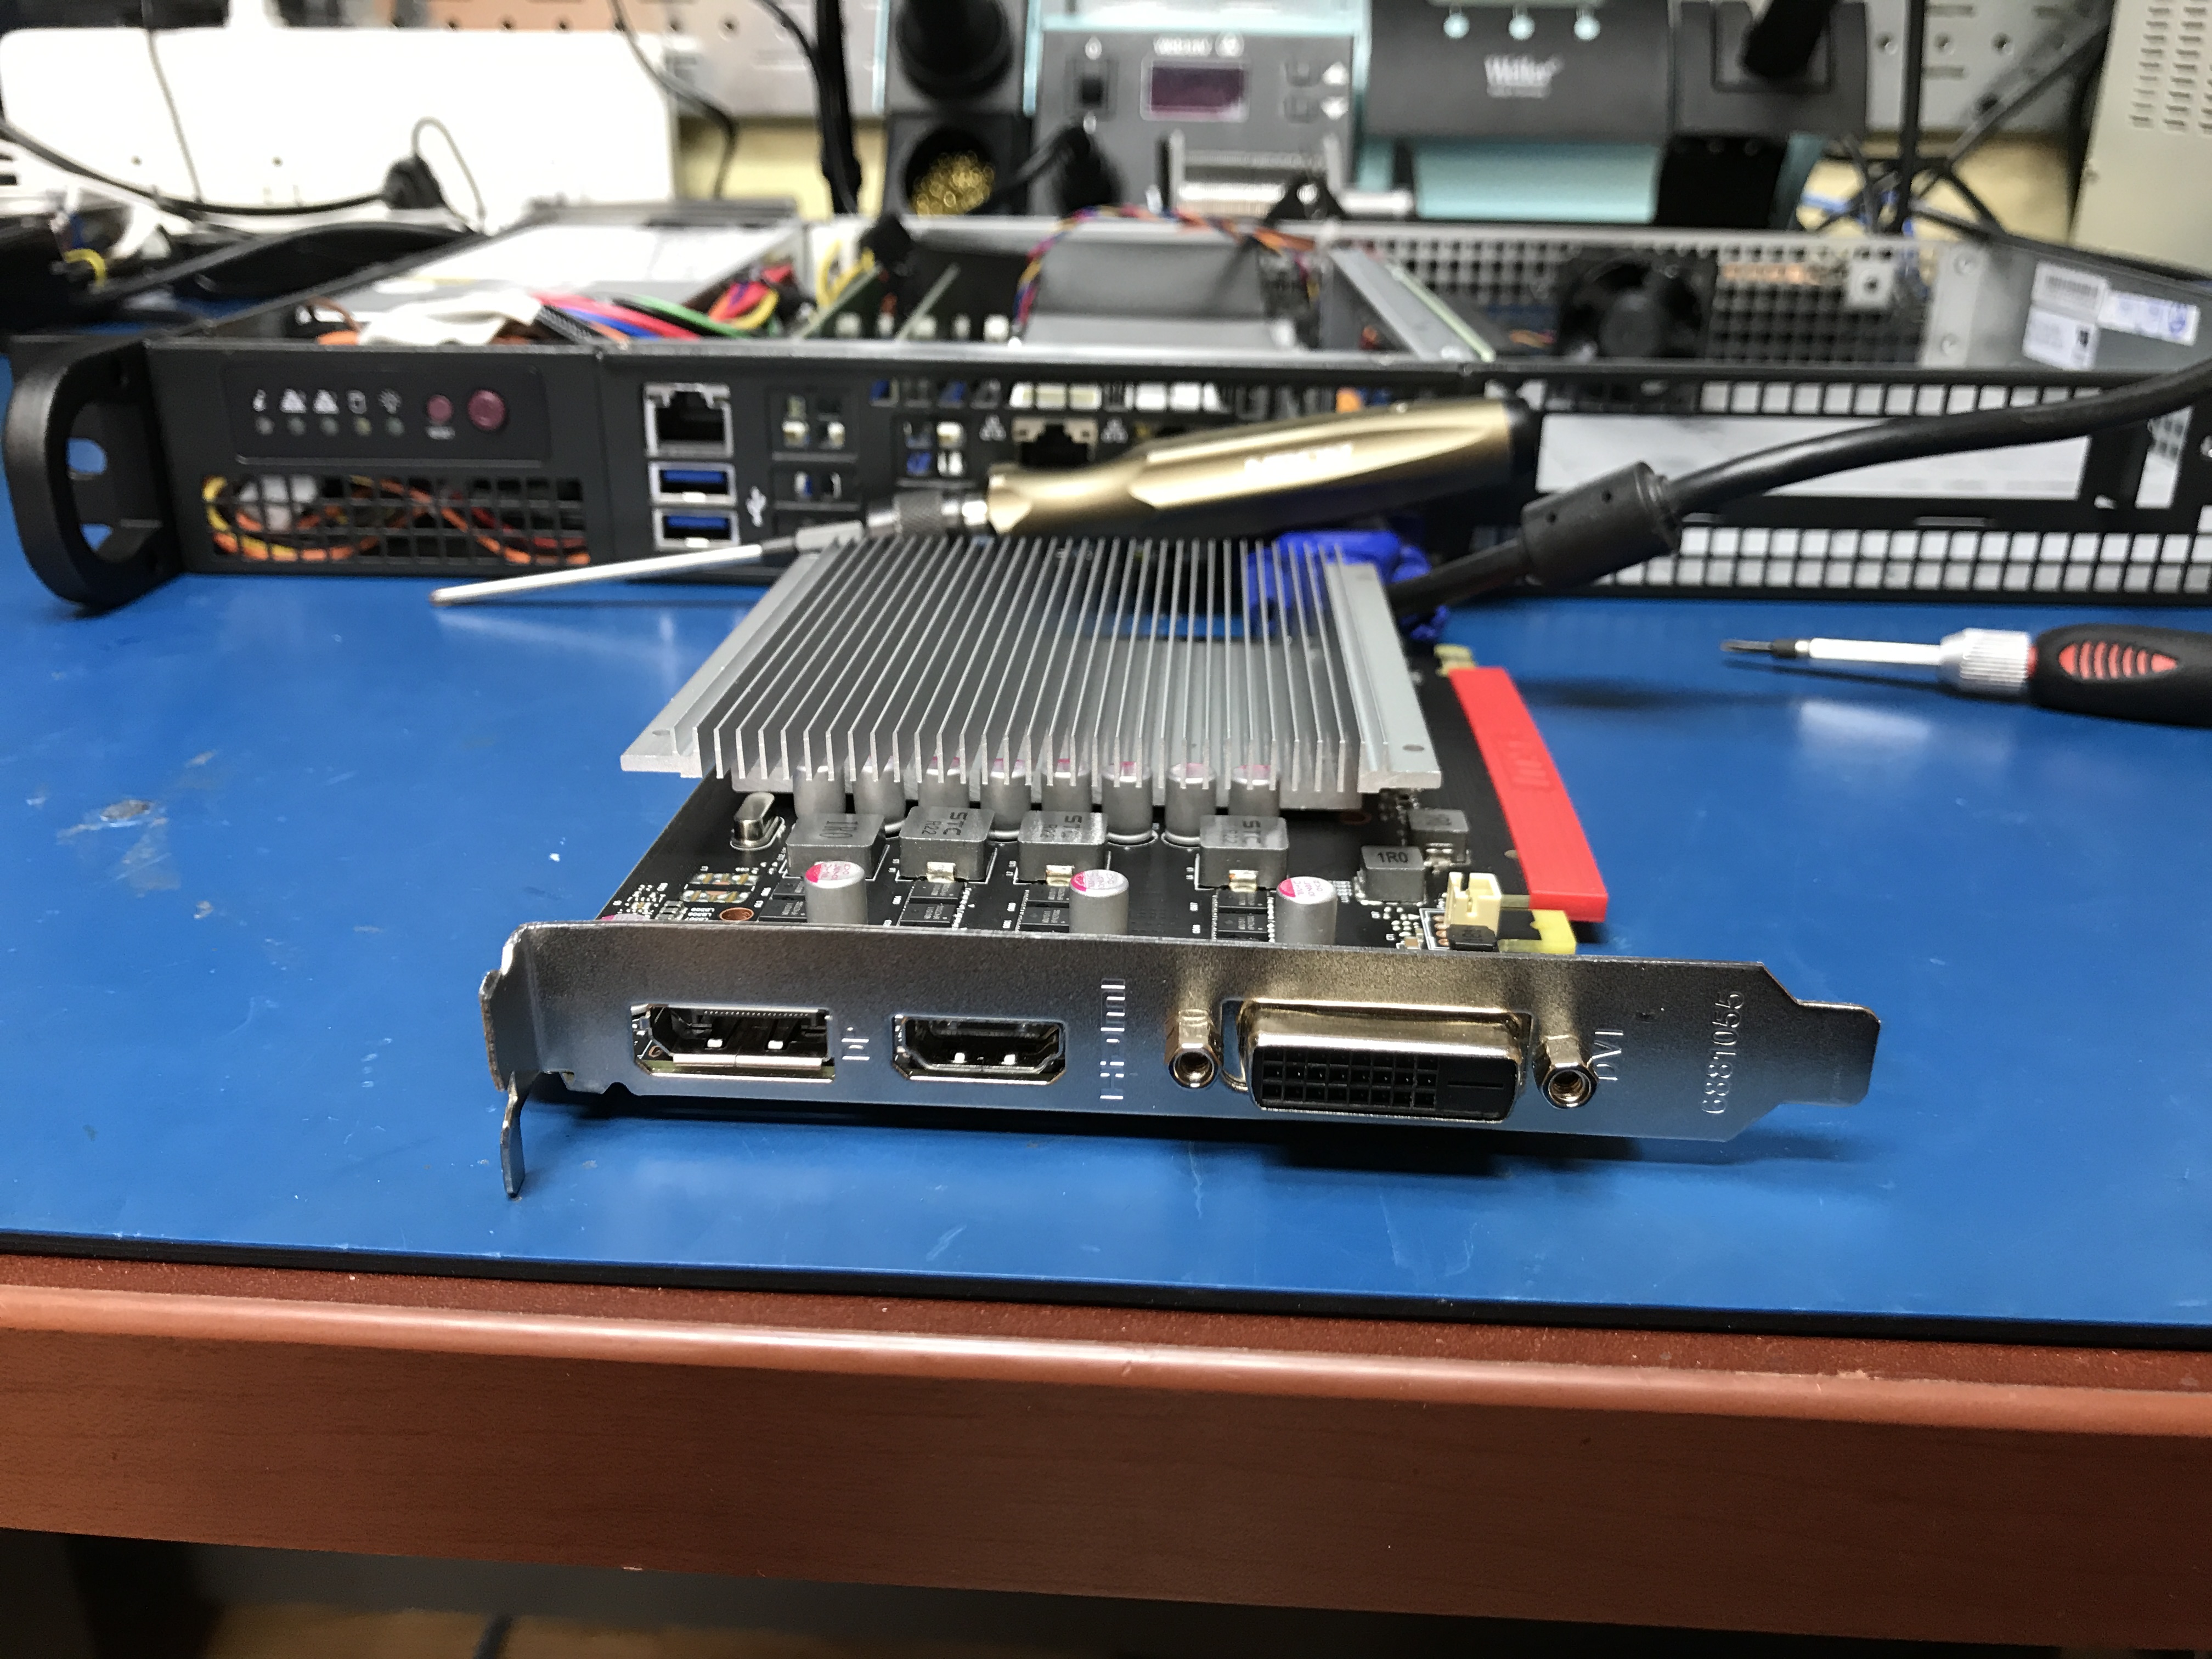 MSI GTX 1050Ti 4G OC - The poor man's 1u inference GPU